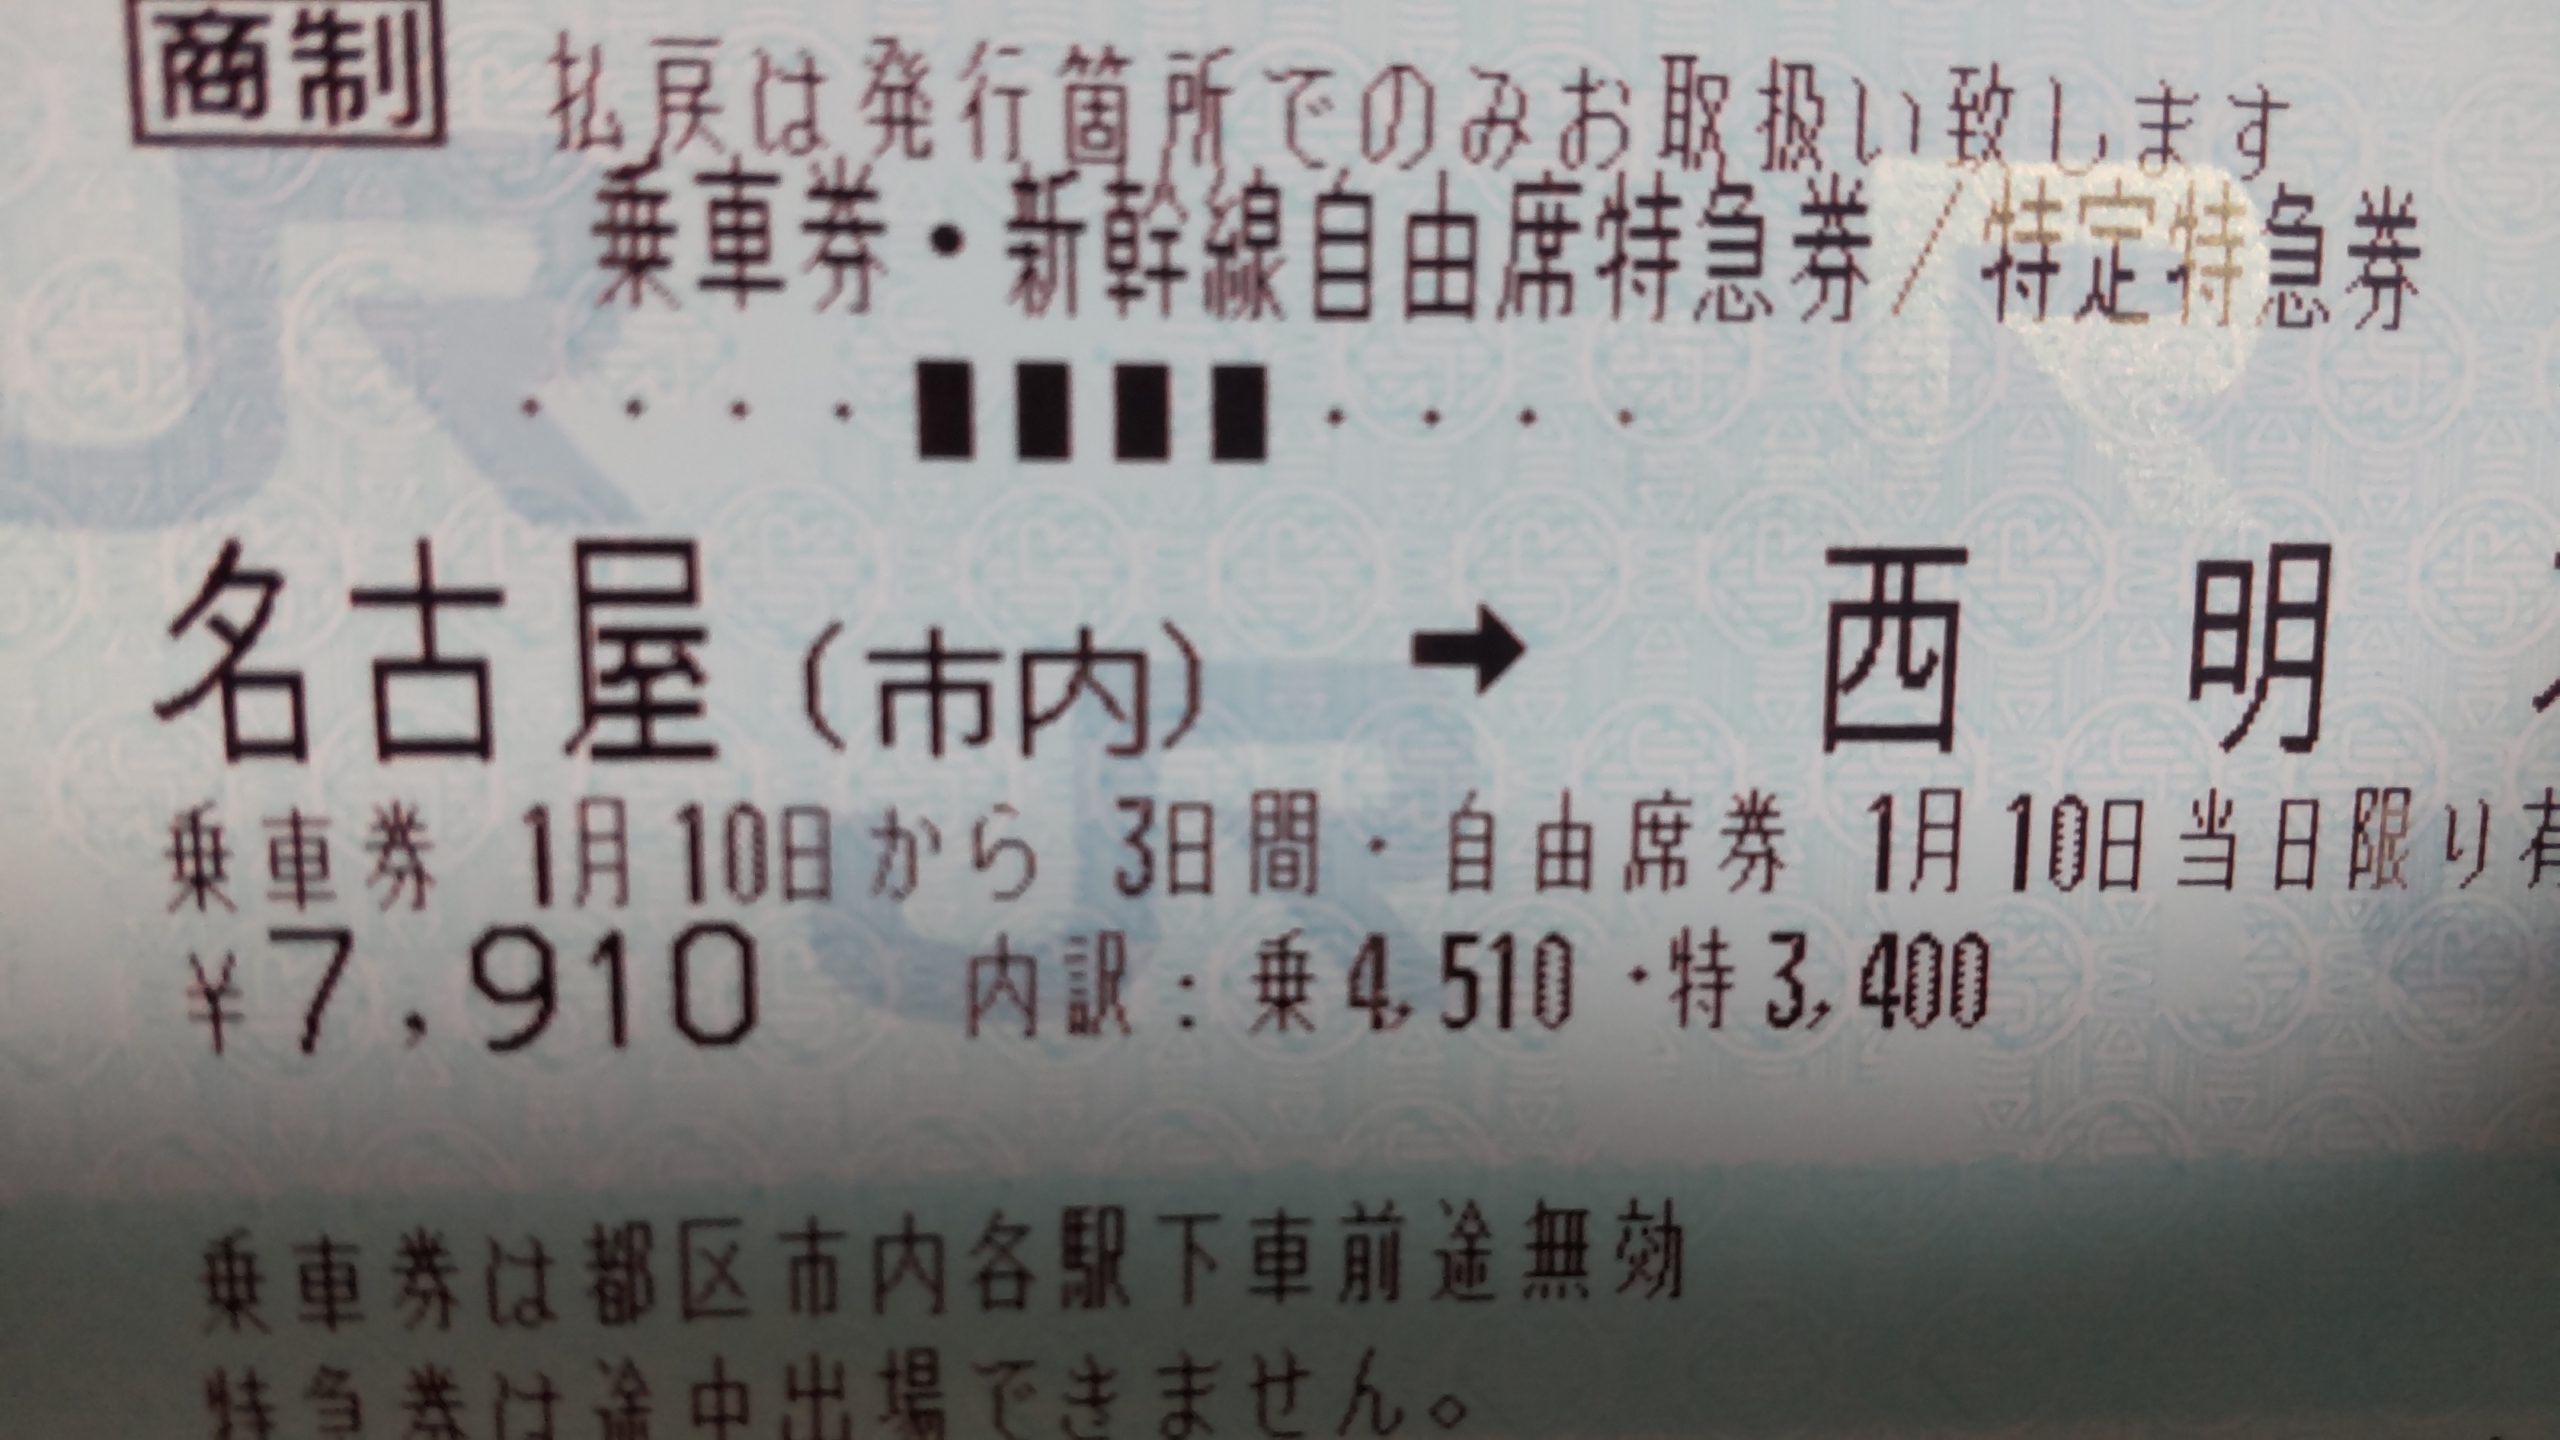 近畿日本ツーリスト旅行券で新幹線を予約する時の注意点 しげしげブログ